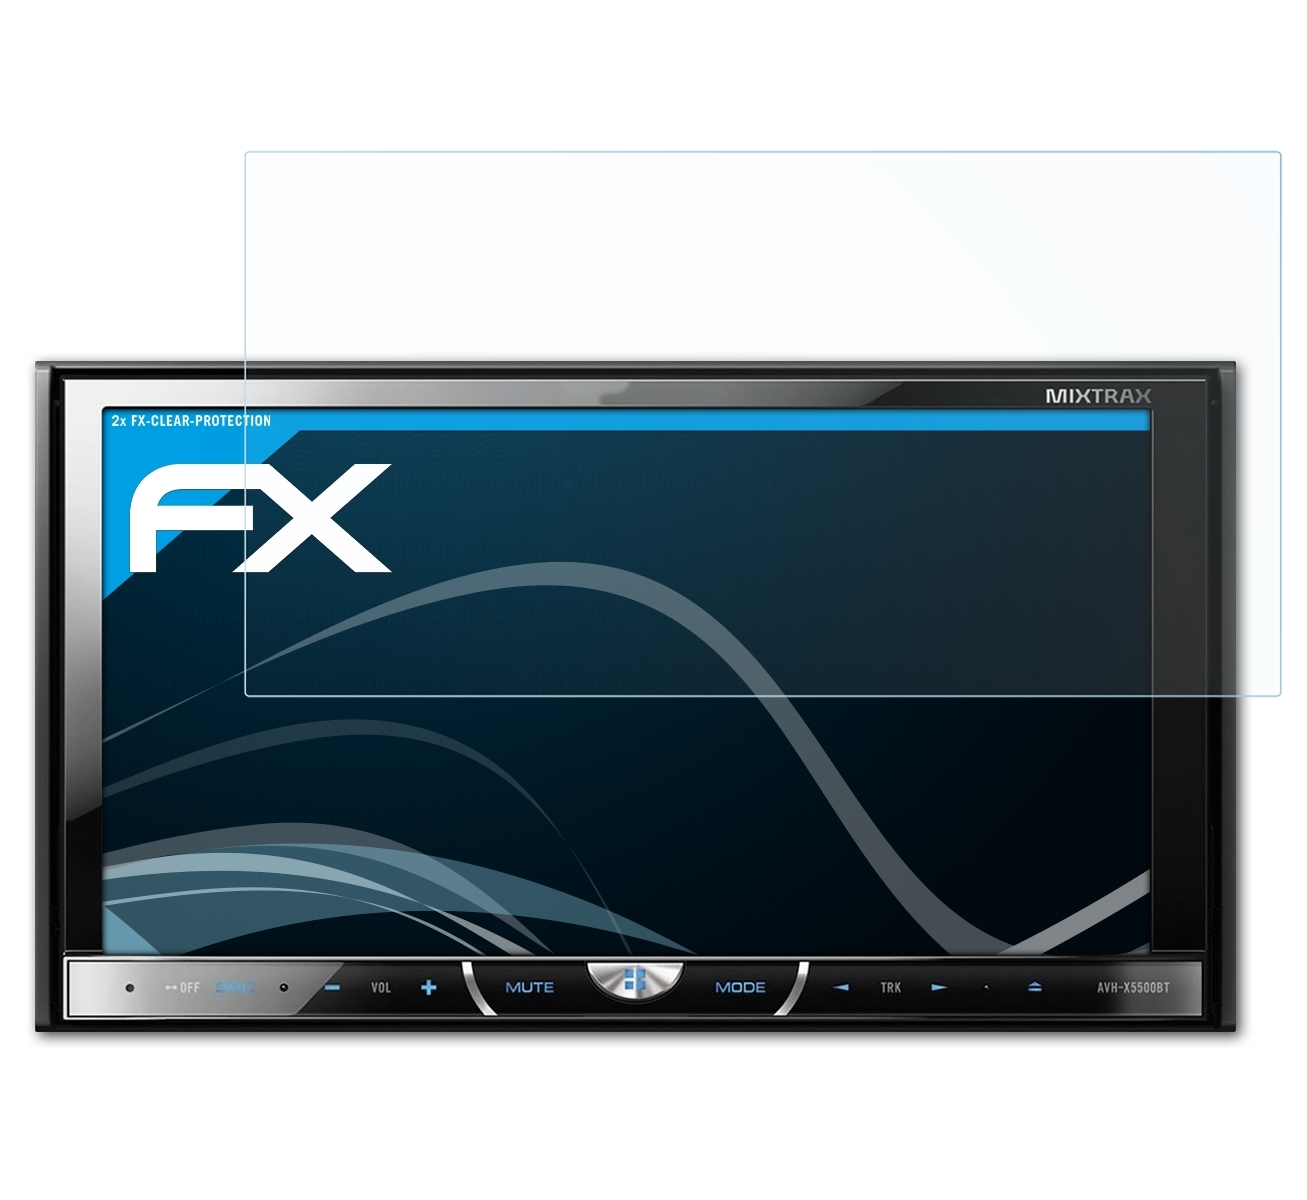 2x AVH-X5600BT) ATFOLIX Displayschutz(für Pioneer FX-Clear